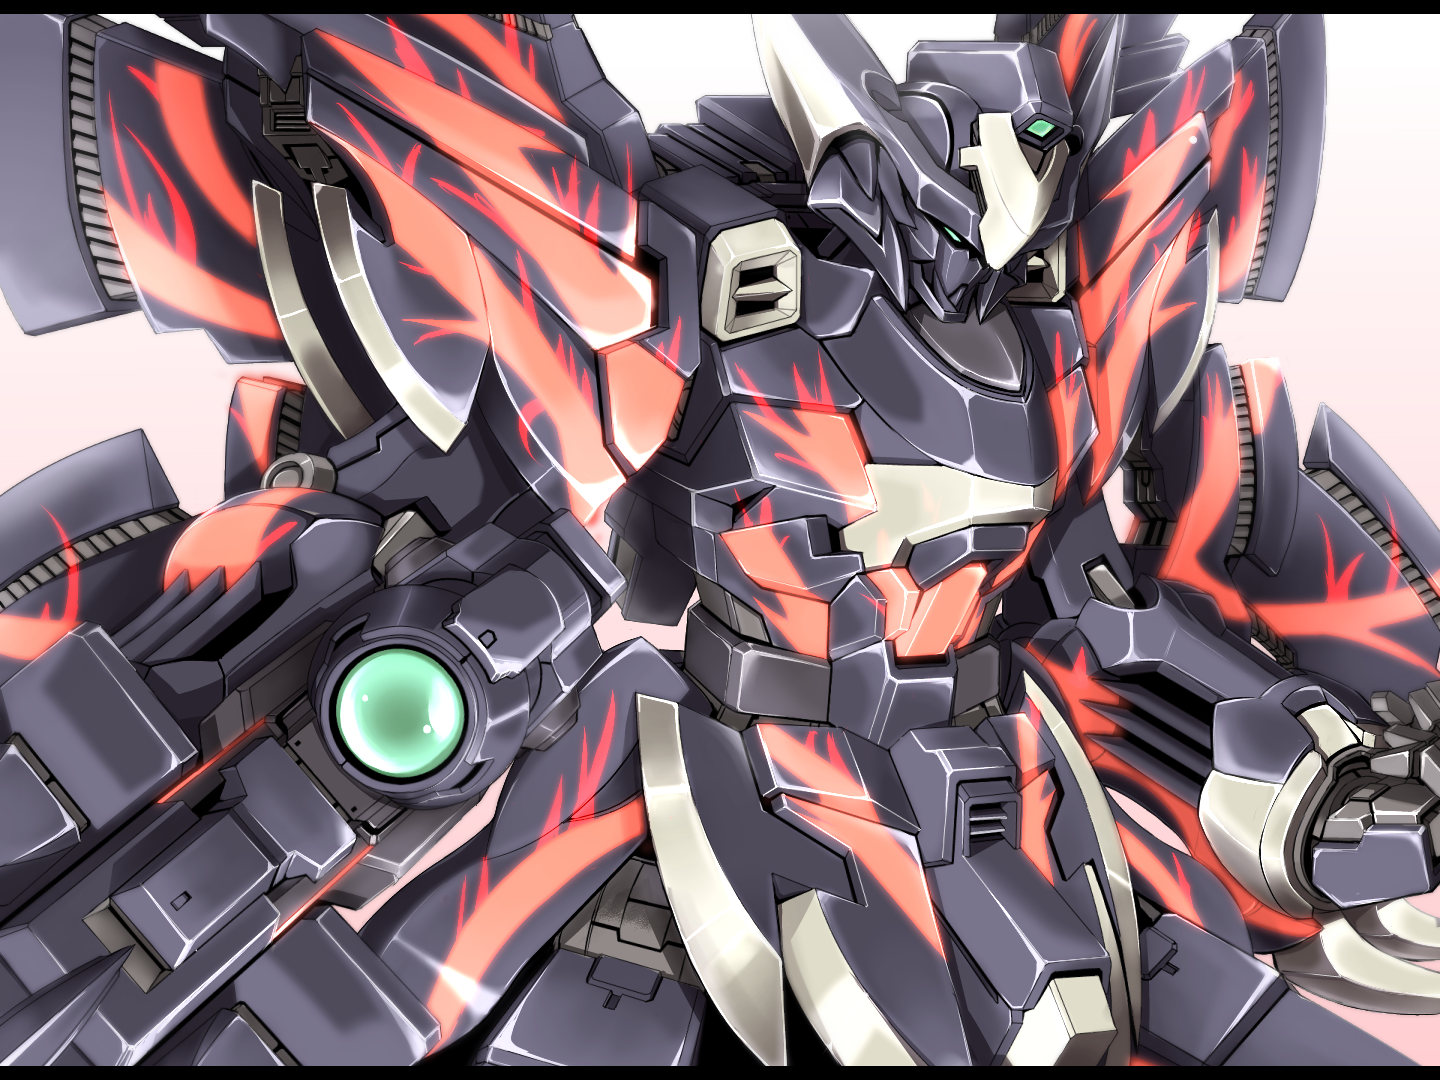 Anime 1440x1080 anime mechs Galilnagant Super Robot Taisen artwork digital art fan art